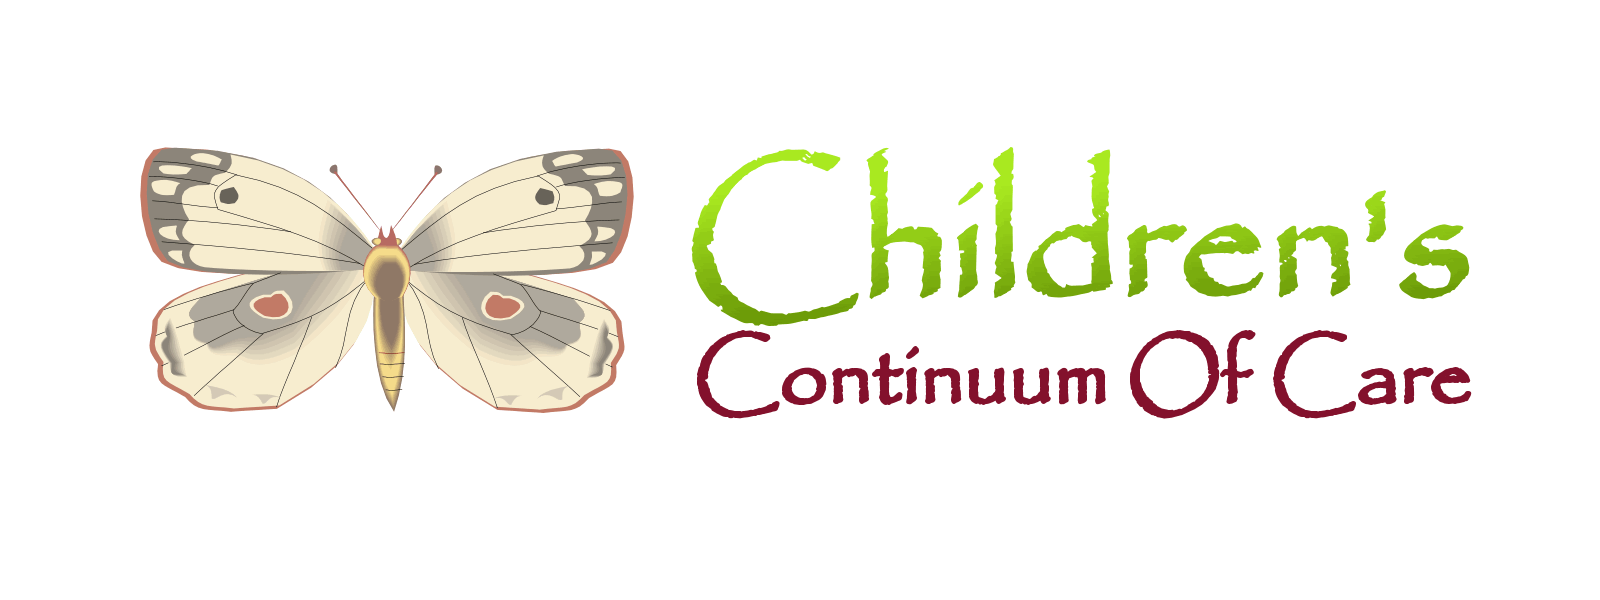 Children's Continuum of Care